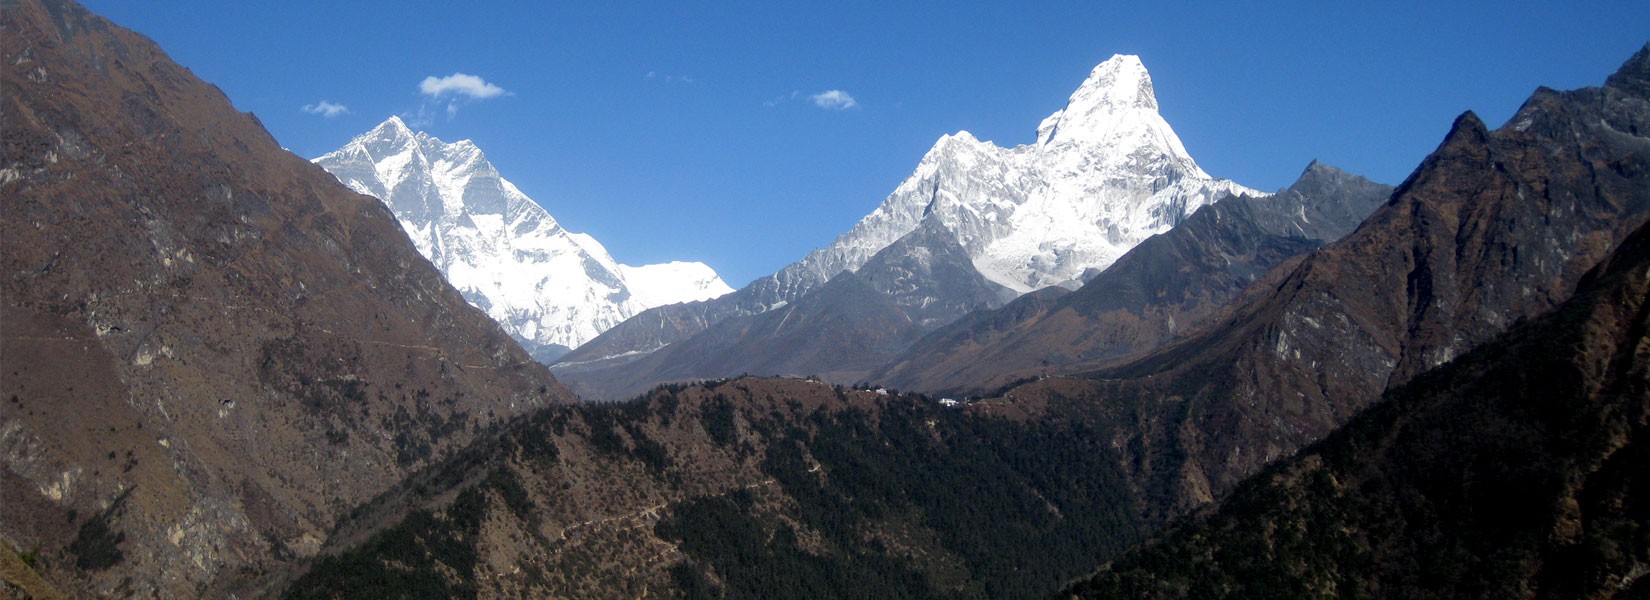 Tengboche Monastery in Himalaya